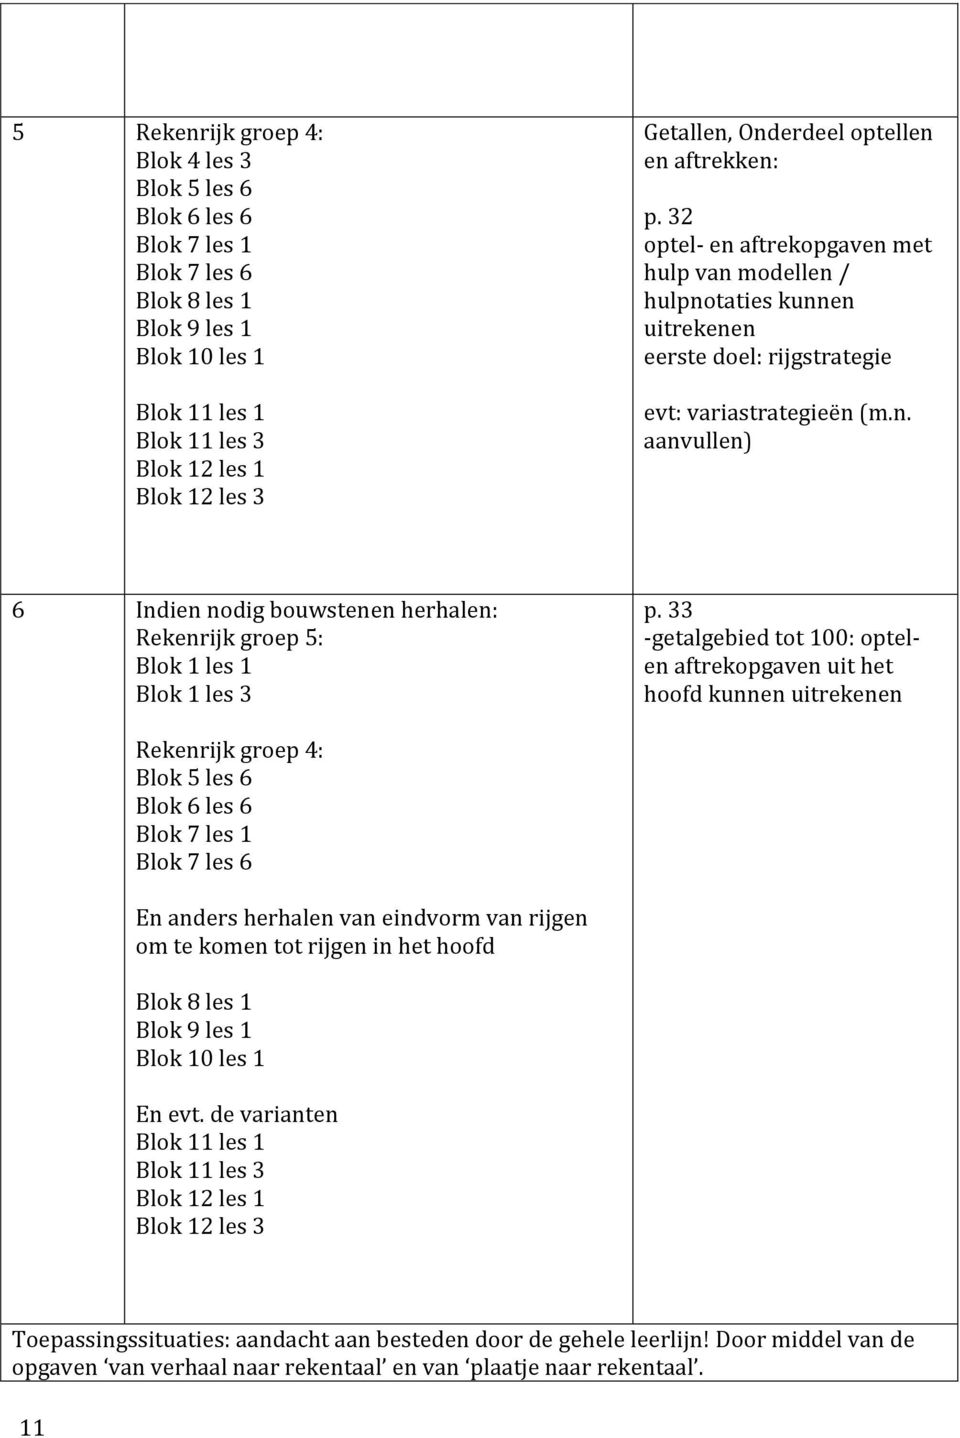 Hedendaags Passende Perspectieven. Bij Rekenrijk 3 e editie - PDF Gratis download LX-66